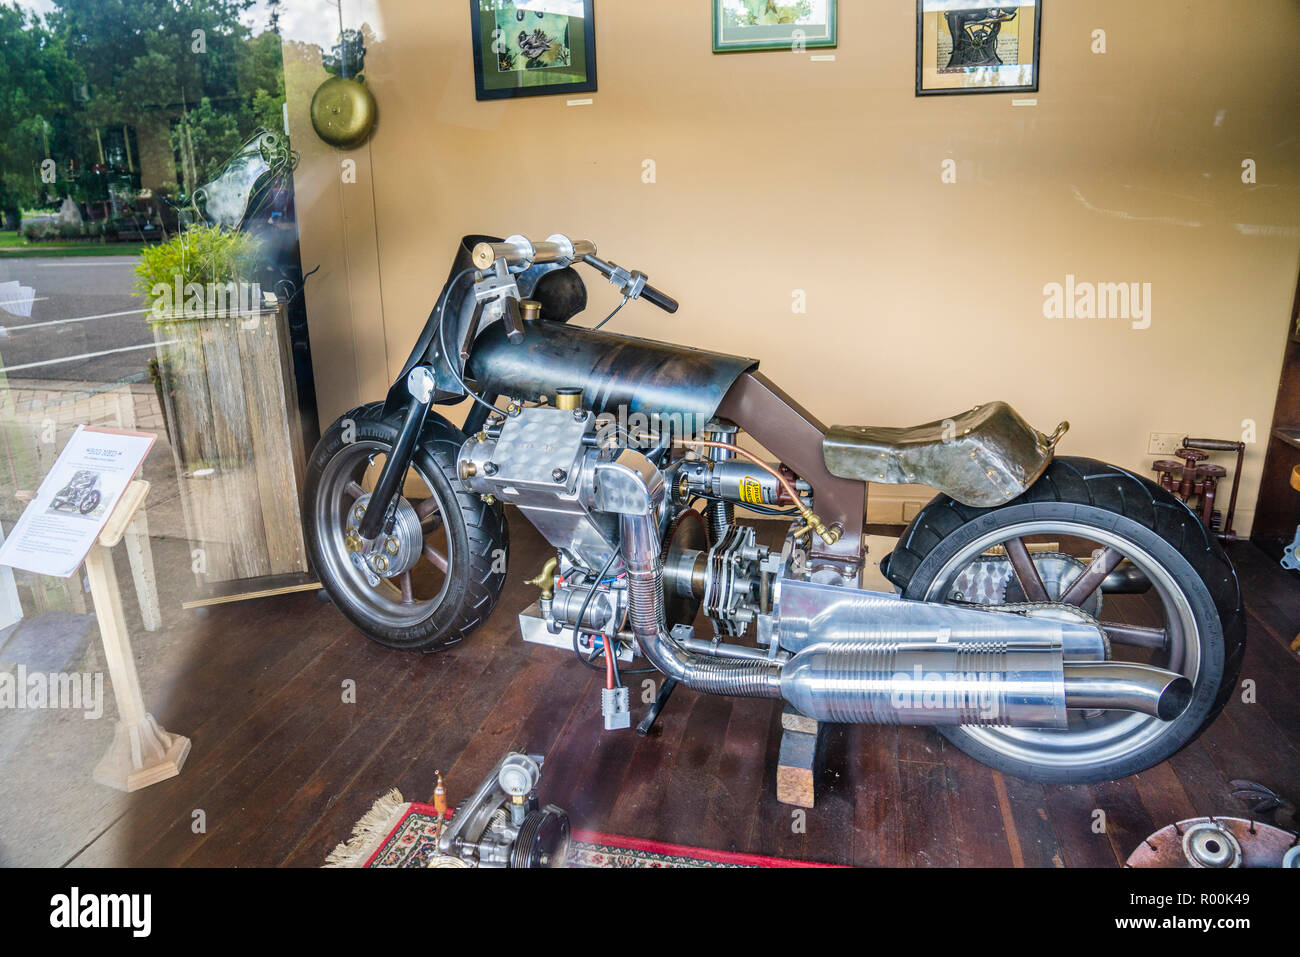 Handgefertigte Motorrad mit dem Titel 'Big Ned 'the ultimate Street Fighter auf die Hersteller von Metall Galerie Cafe am nördlichen Hochebenen Land Stadt Walc Stockfoto